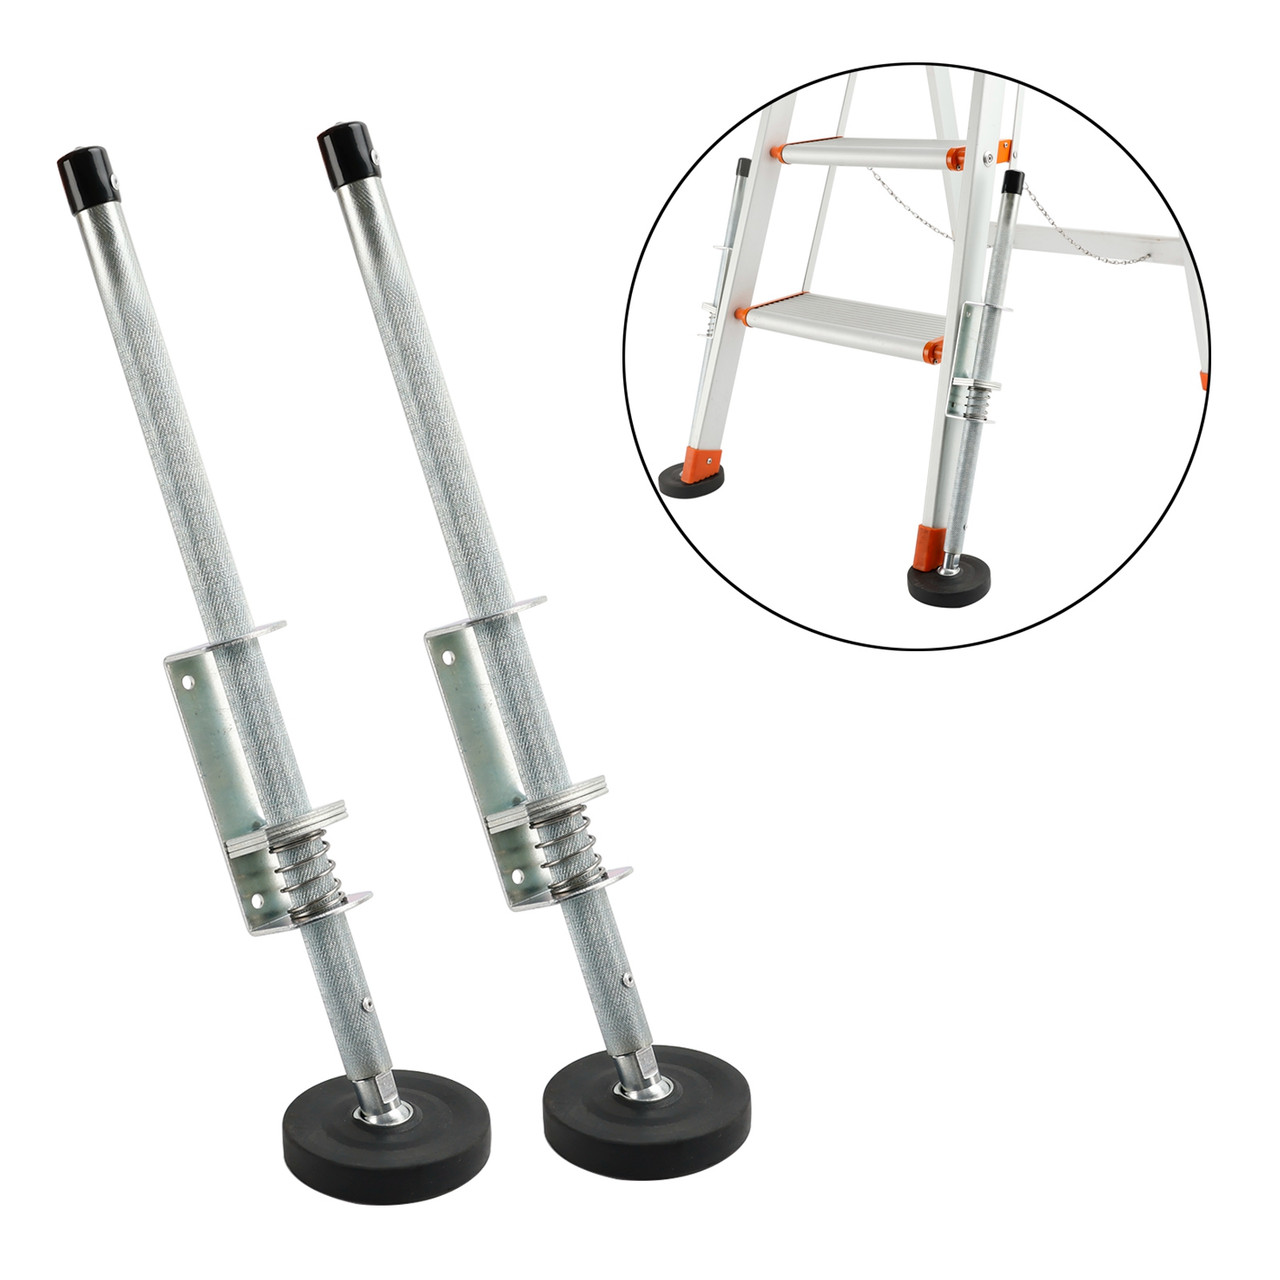 Ladder Leg Leveler for Extension Ladder Stabilizer Leg Leveling Tool 330LBS 20"